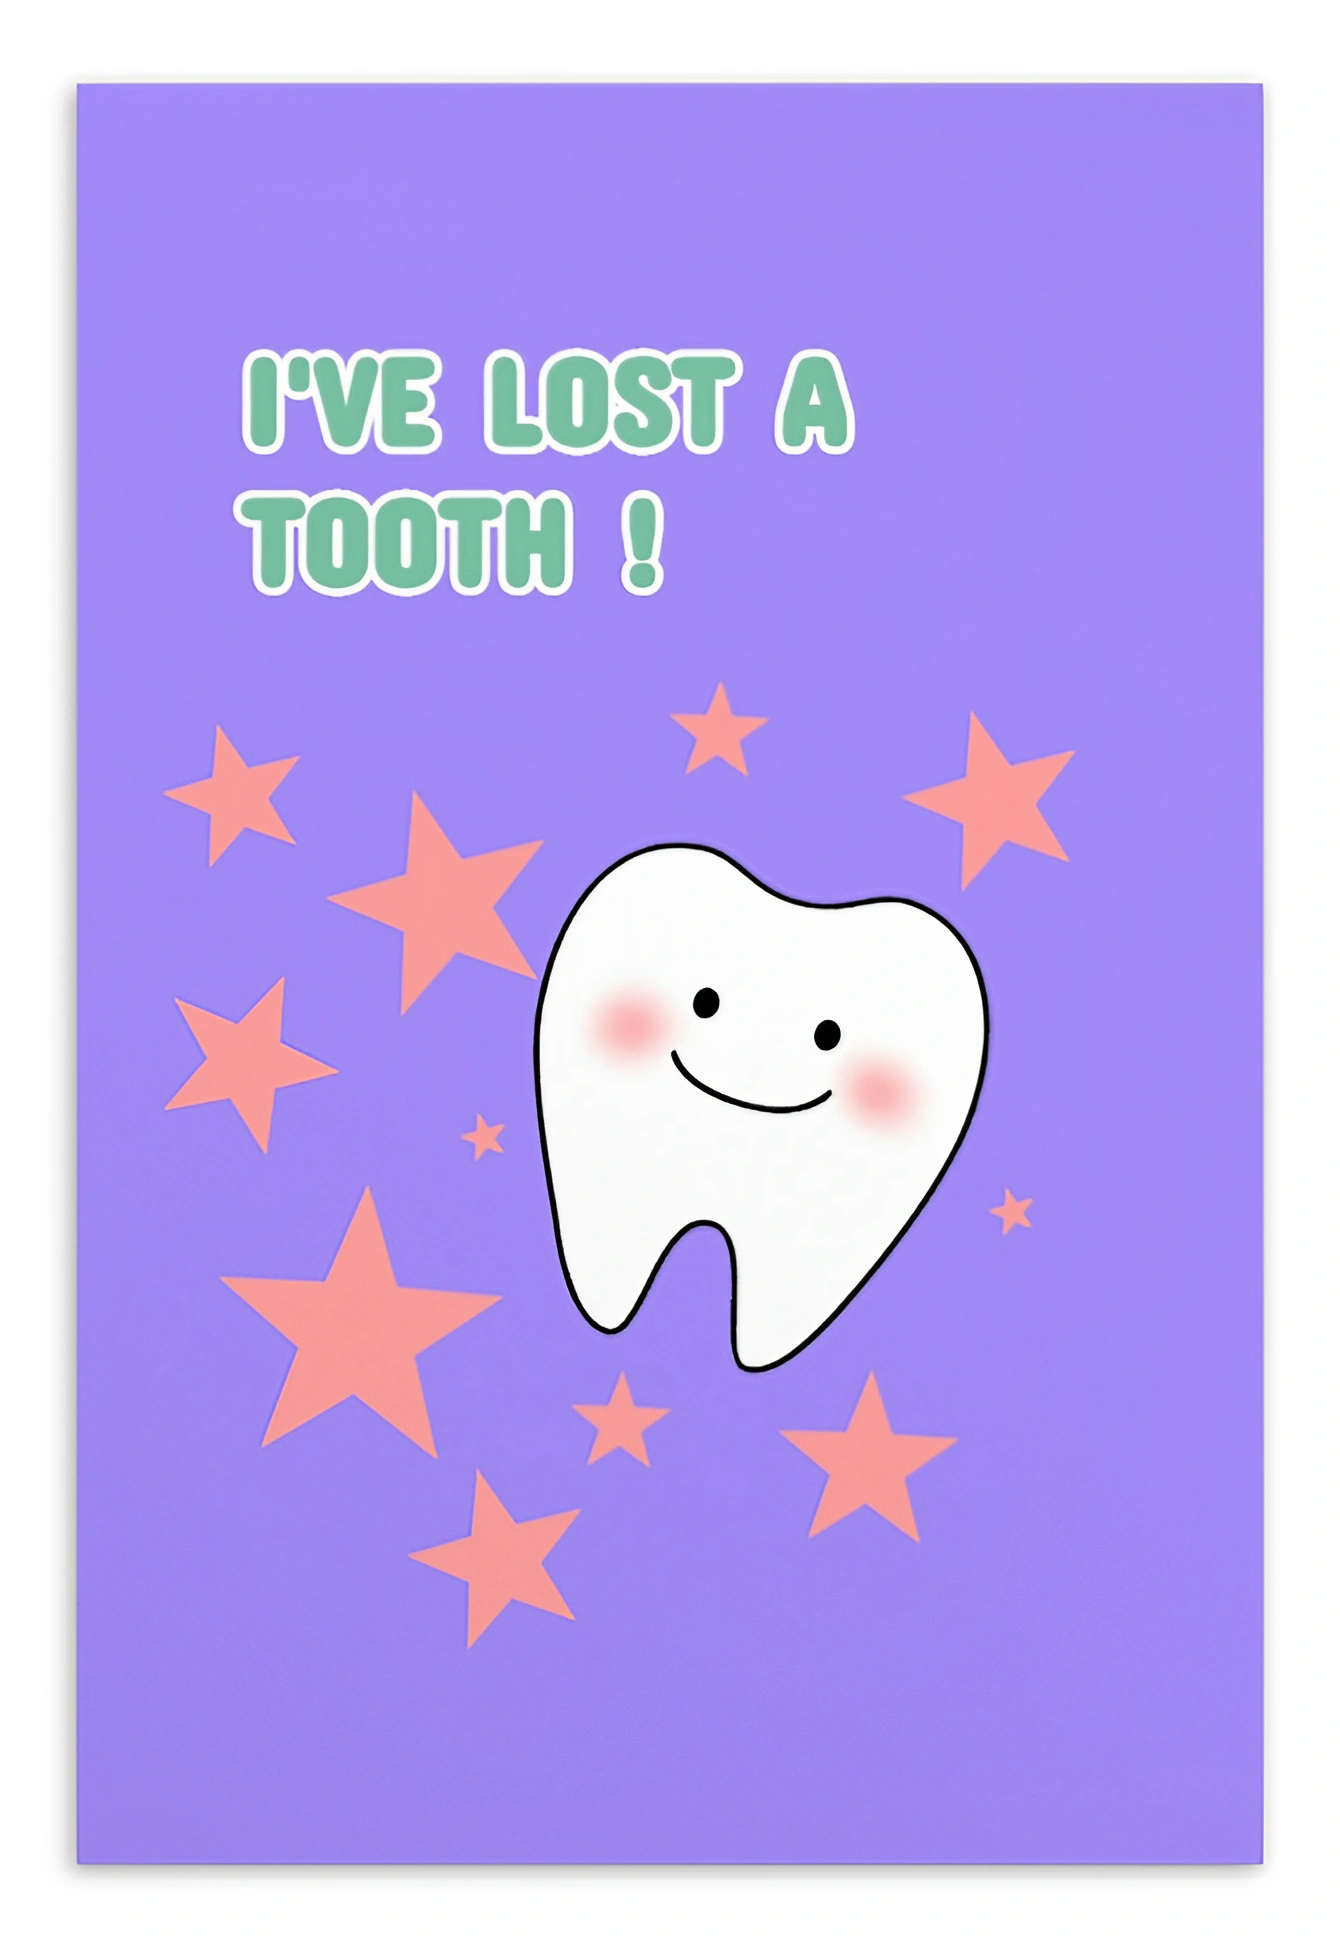 Dental Motivational & Reward Cards- I've Lost A Tooth!